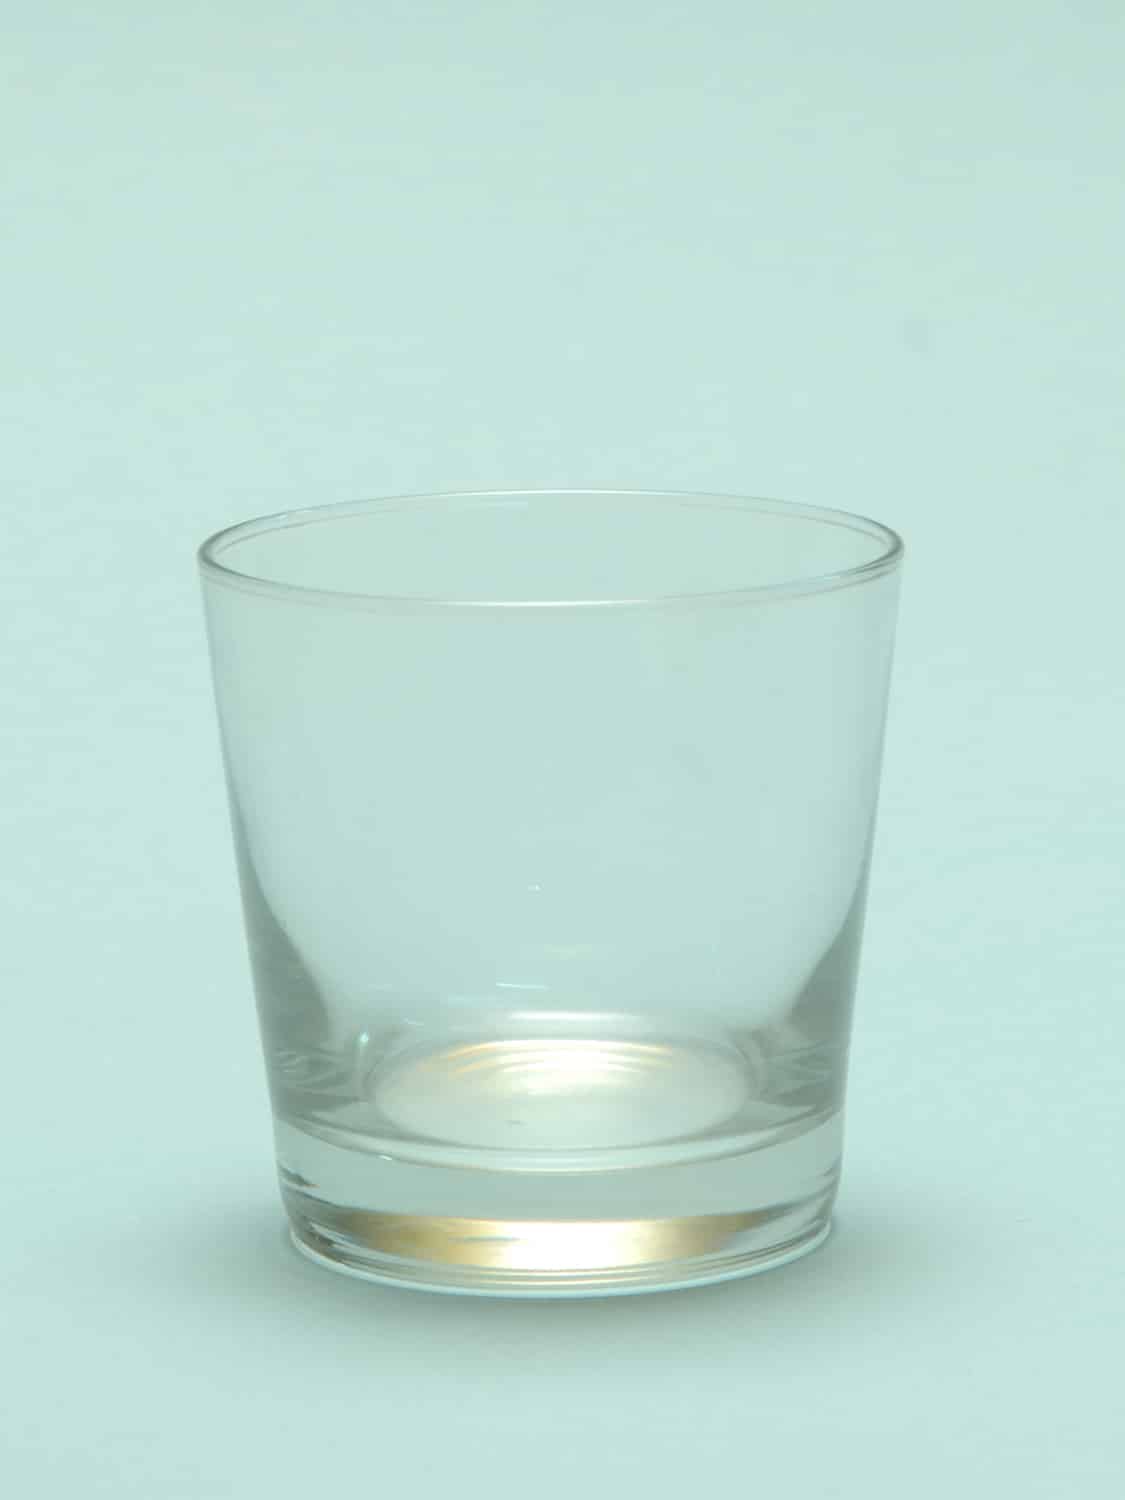 Suikerglas voor film, video opnames. Whiskyglas glad conisch, H*B 8,2 x 8,3 cm.